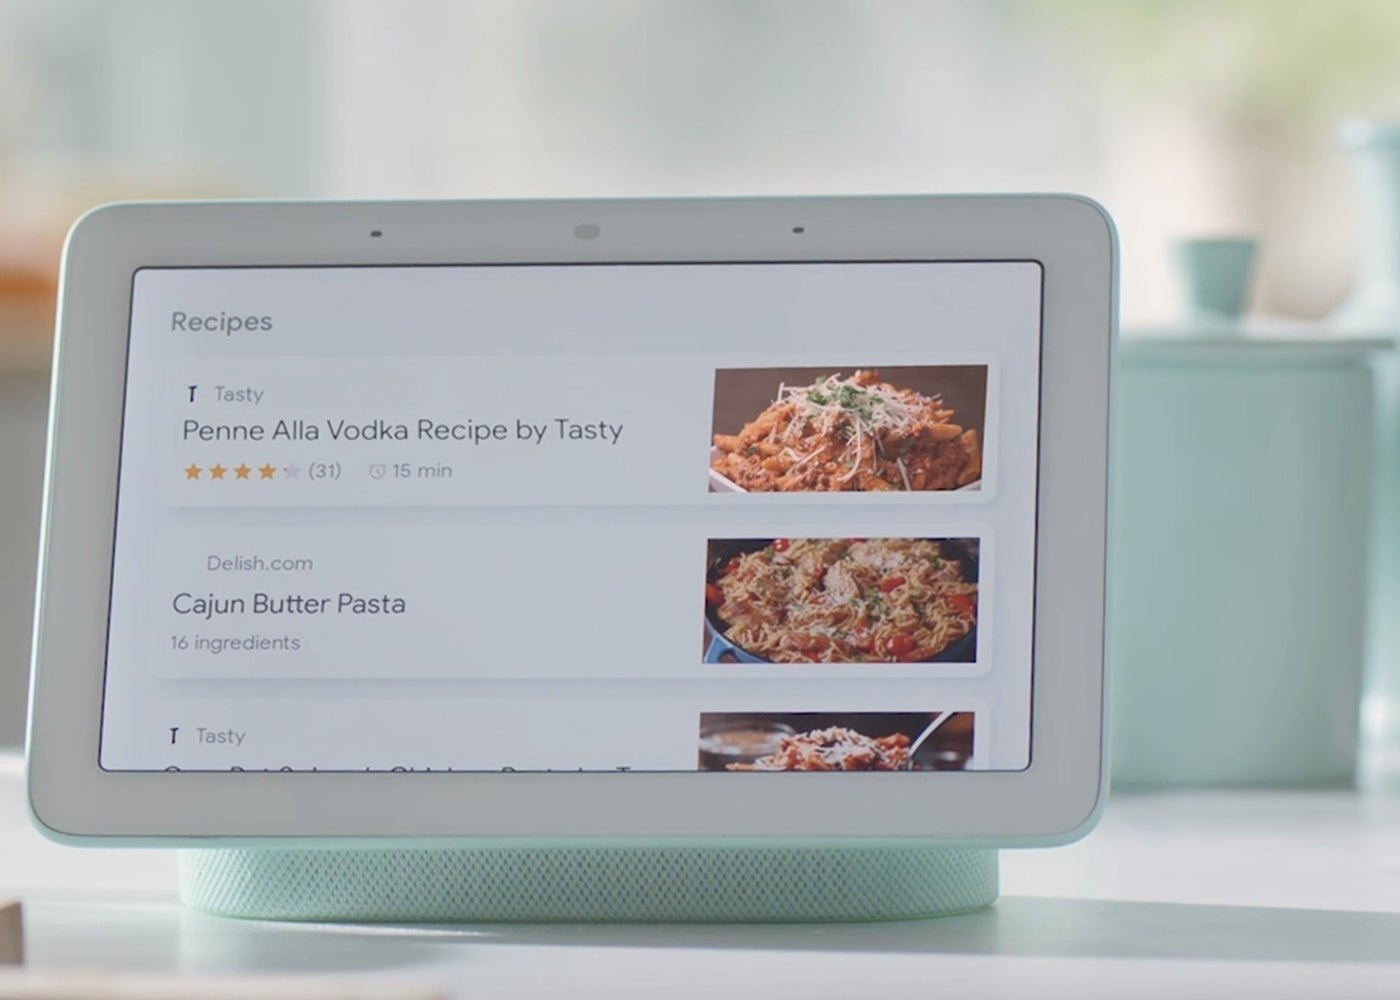 Google Home Hub es oficial y vas a quererlo en tu salón, así es la pantalla inteligente con Assistant